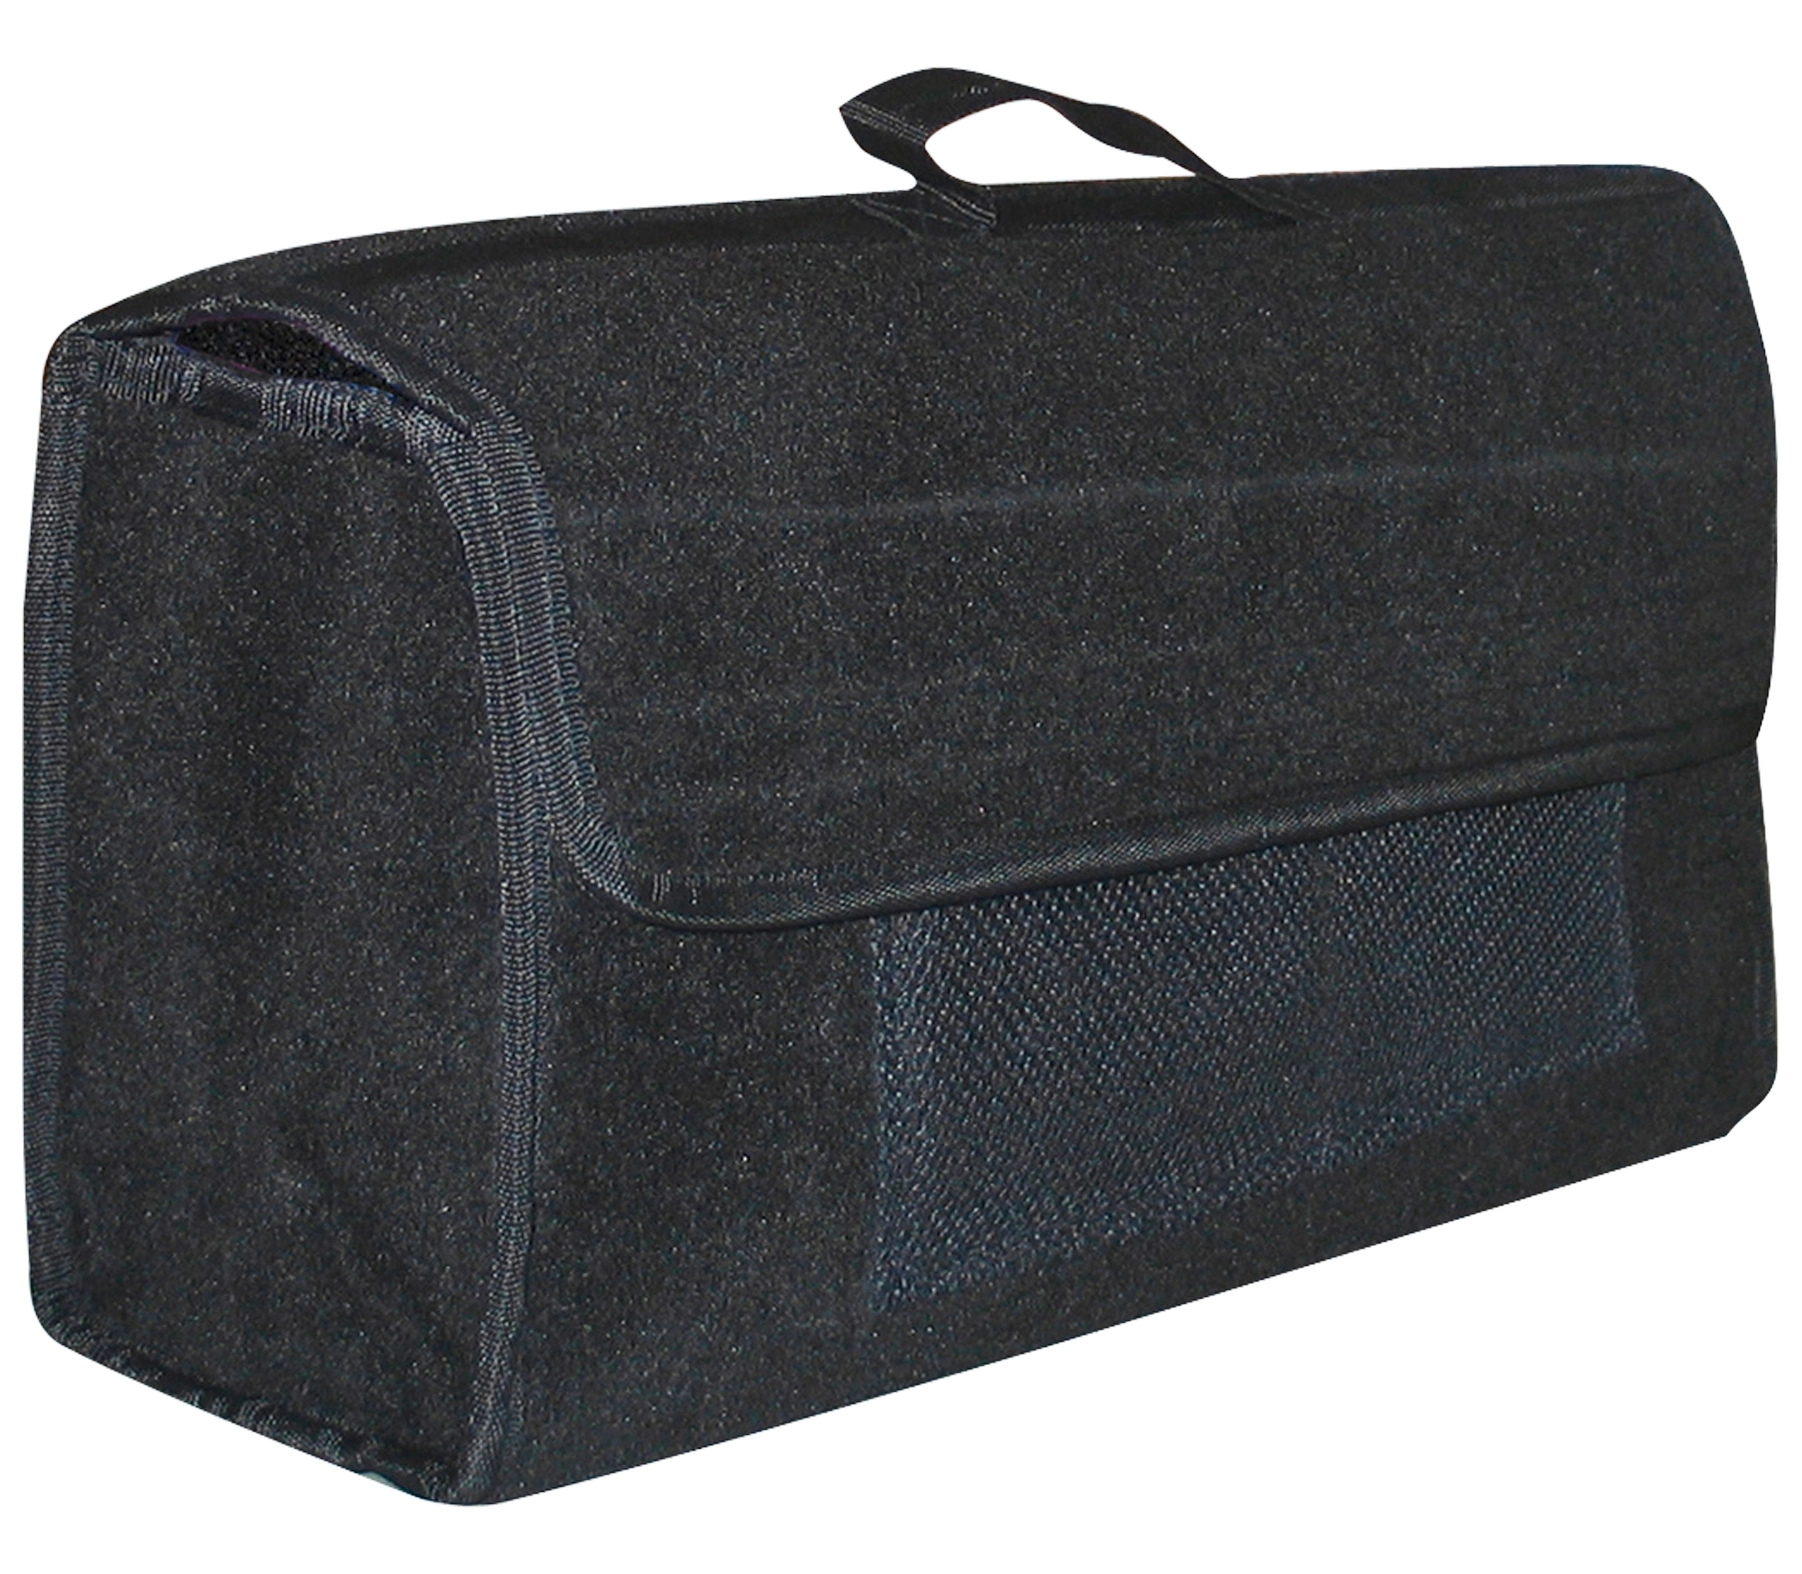 Eufab Kofferraumtasche mit Klett 50 cm x 15 cm x 22 cm kaufen bei OBI